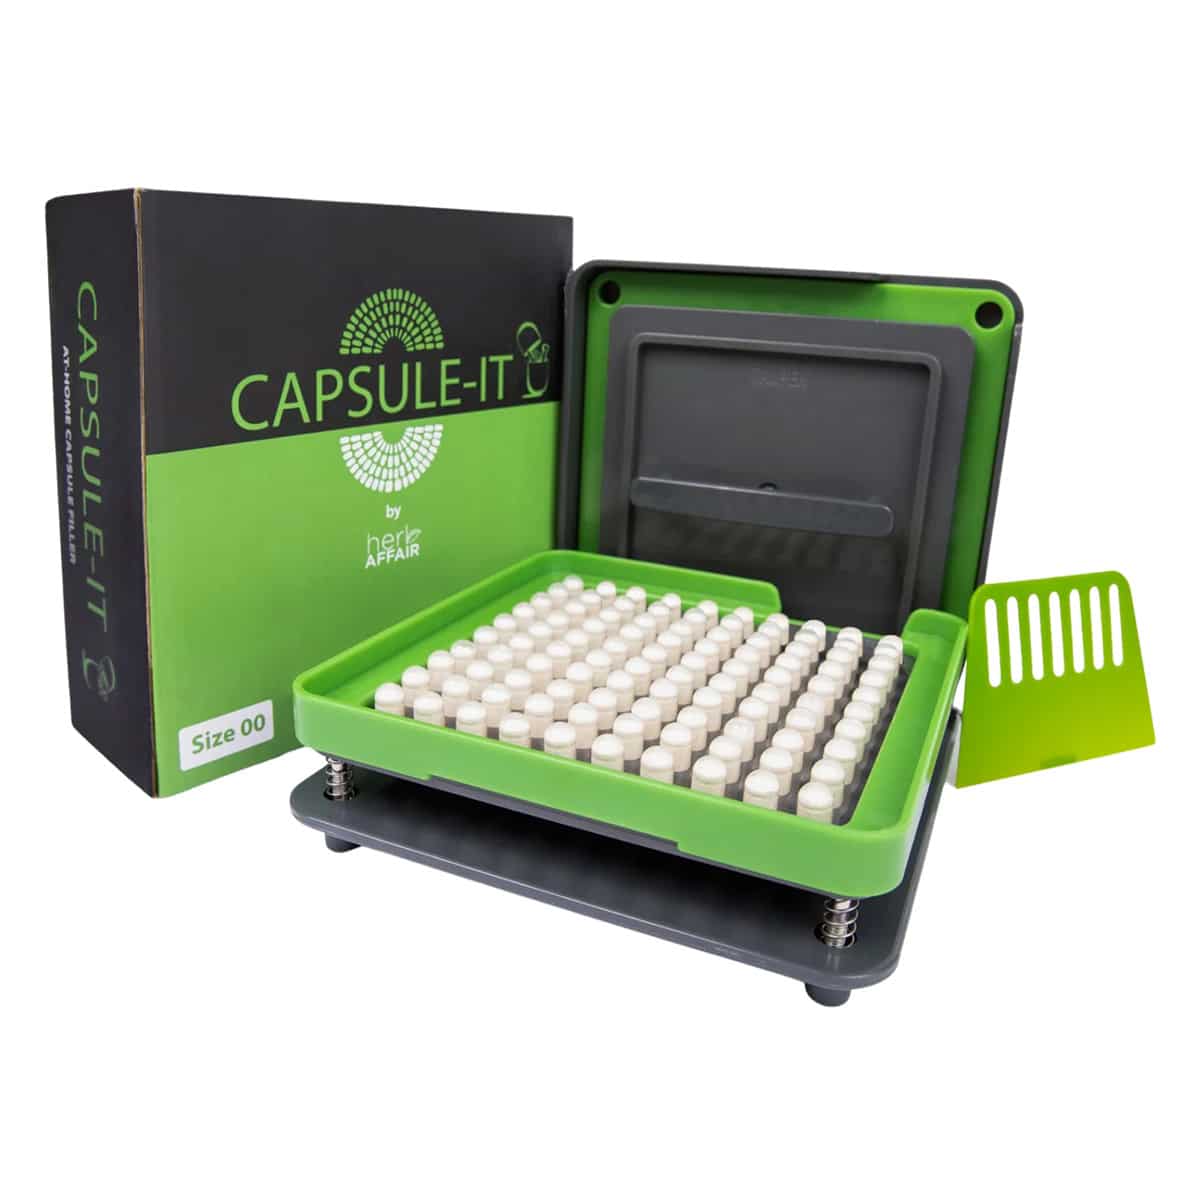 CAPSULE-IT Easy Capsule Filler